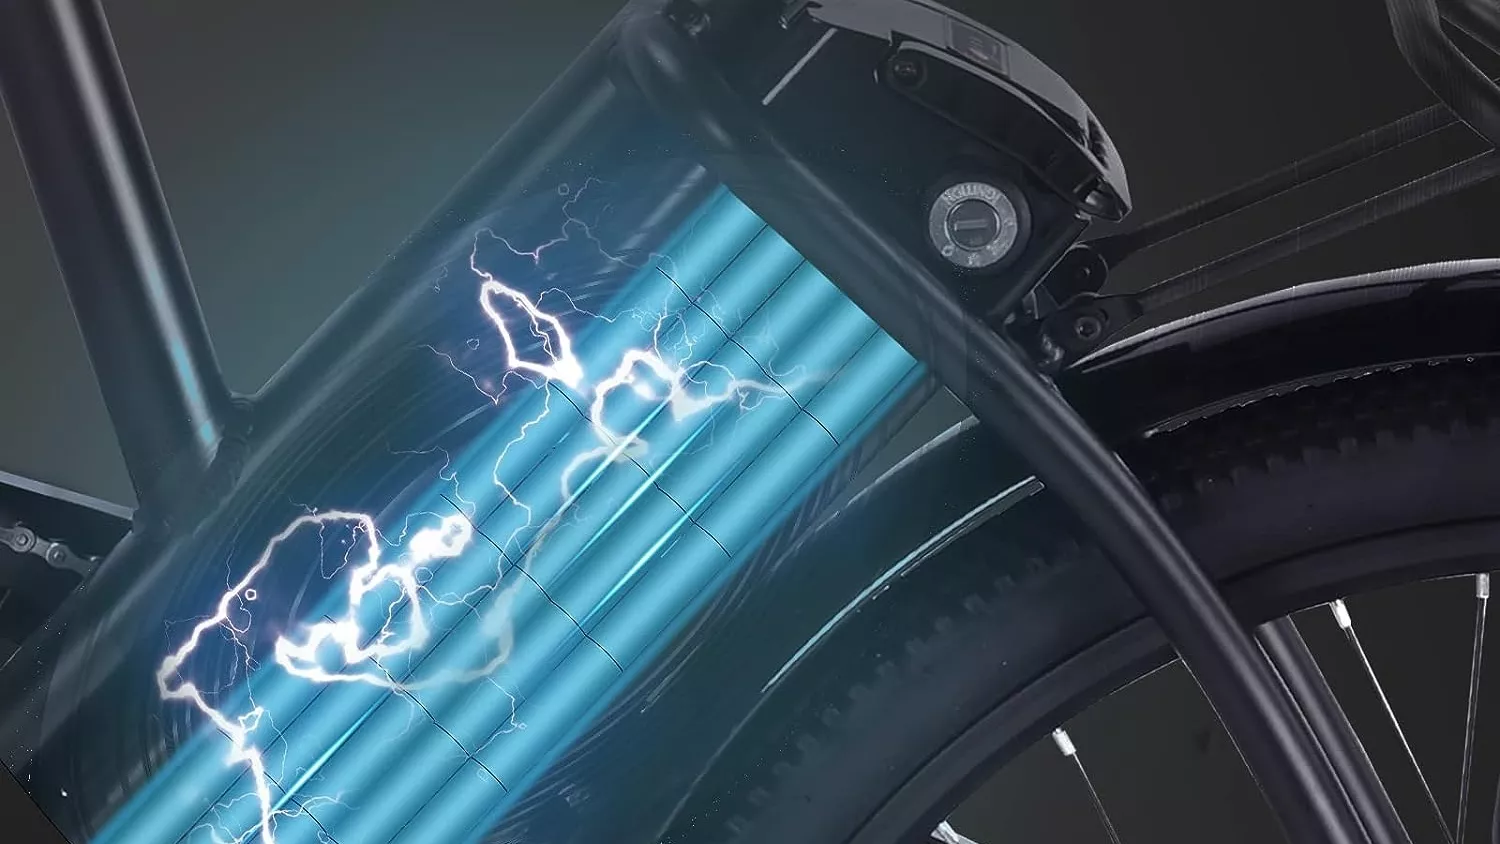 La batería de esta bicicleta eléctrica es muy potente y duradera con una autonomía de hasta 90 km.